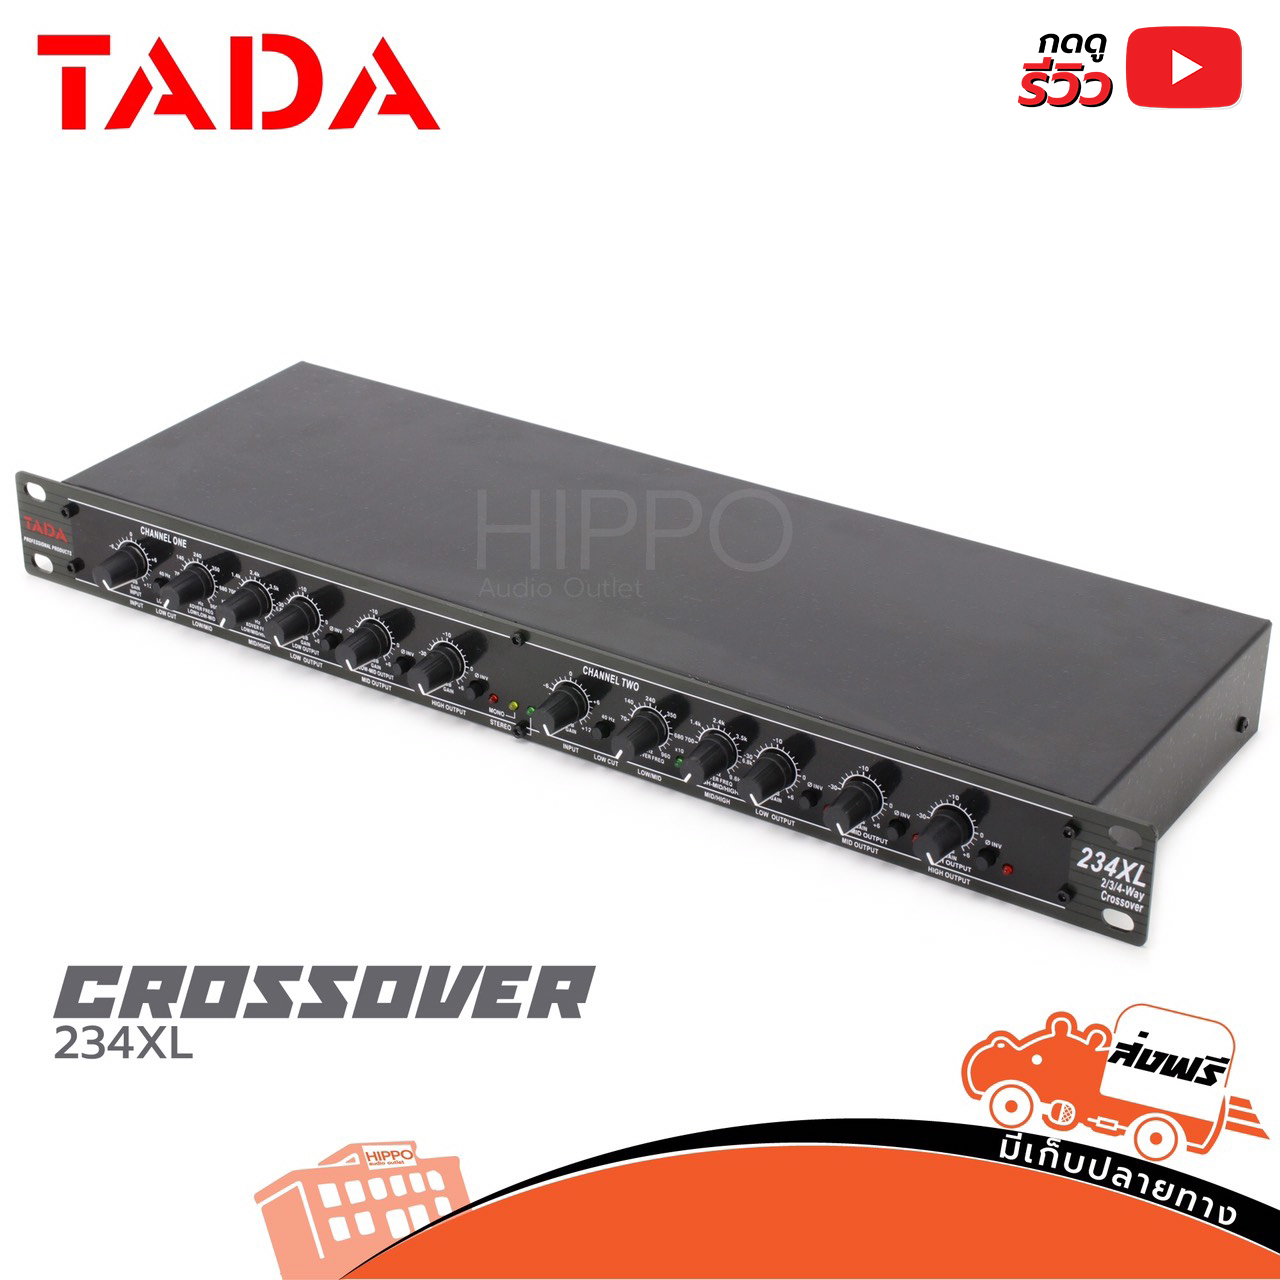 ครอสโอเวอร์3ทาง TADA รุ่น 234 XL Crossover 3 ทางขนาด 1U เครื่องแต่งเสียง ราคาถูก 234 xl สินค้าของแท้ ฮิปโป ออดิโอ Hippo Audio